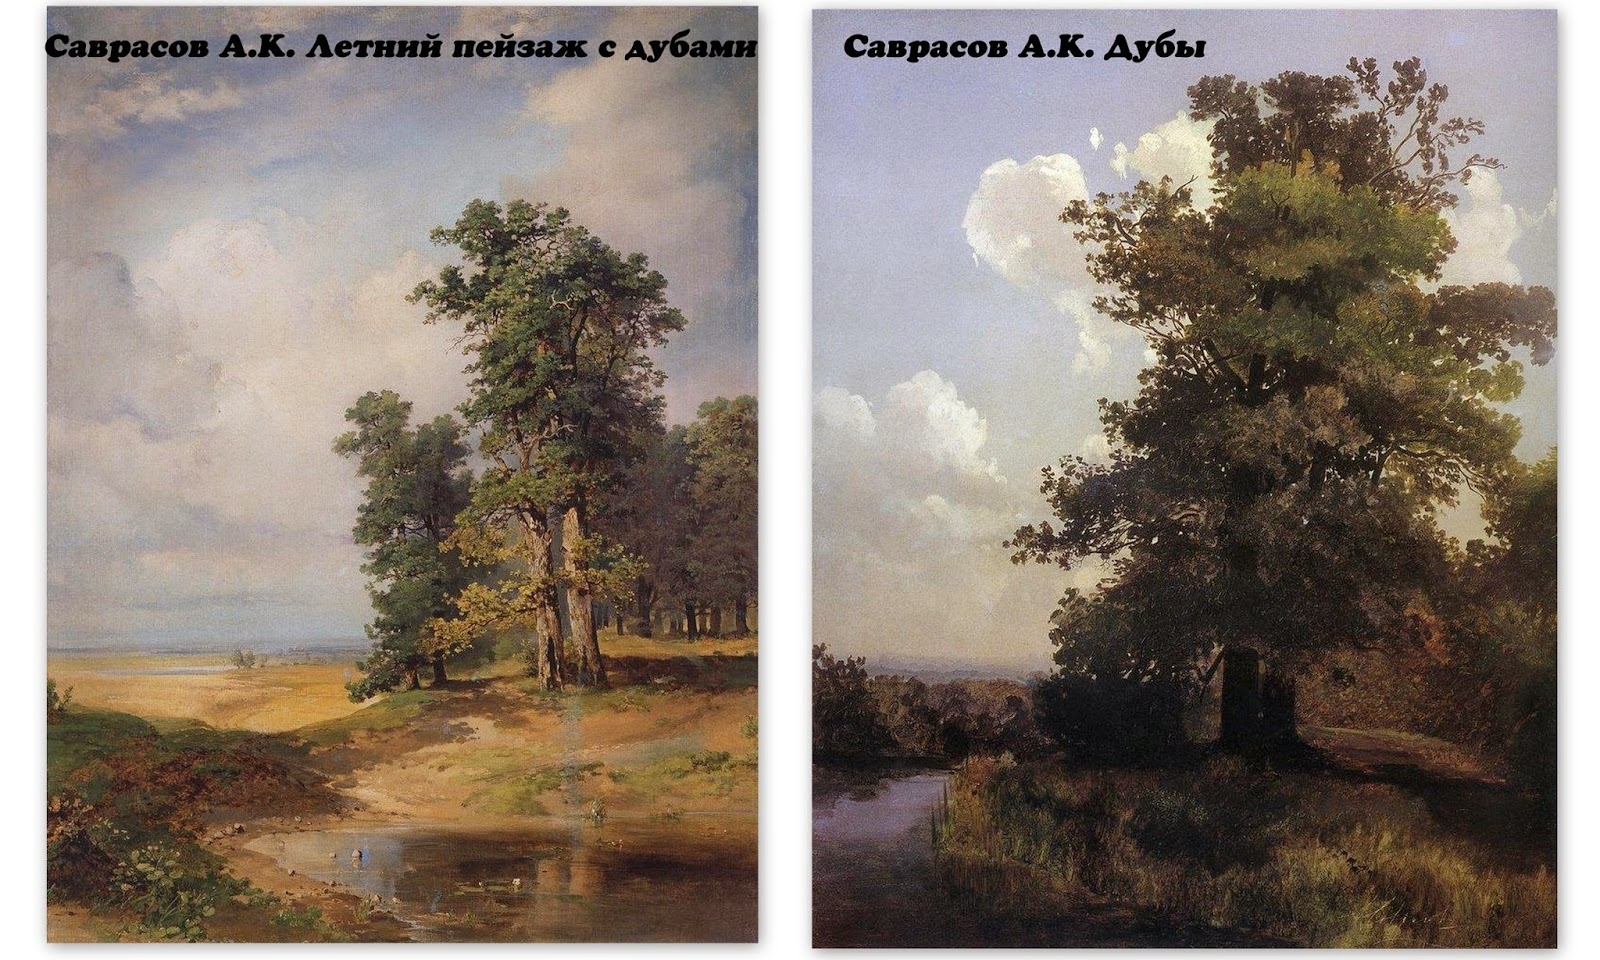 Самая известная картина алексея. Летний пейзаж с дубами Саврасов.